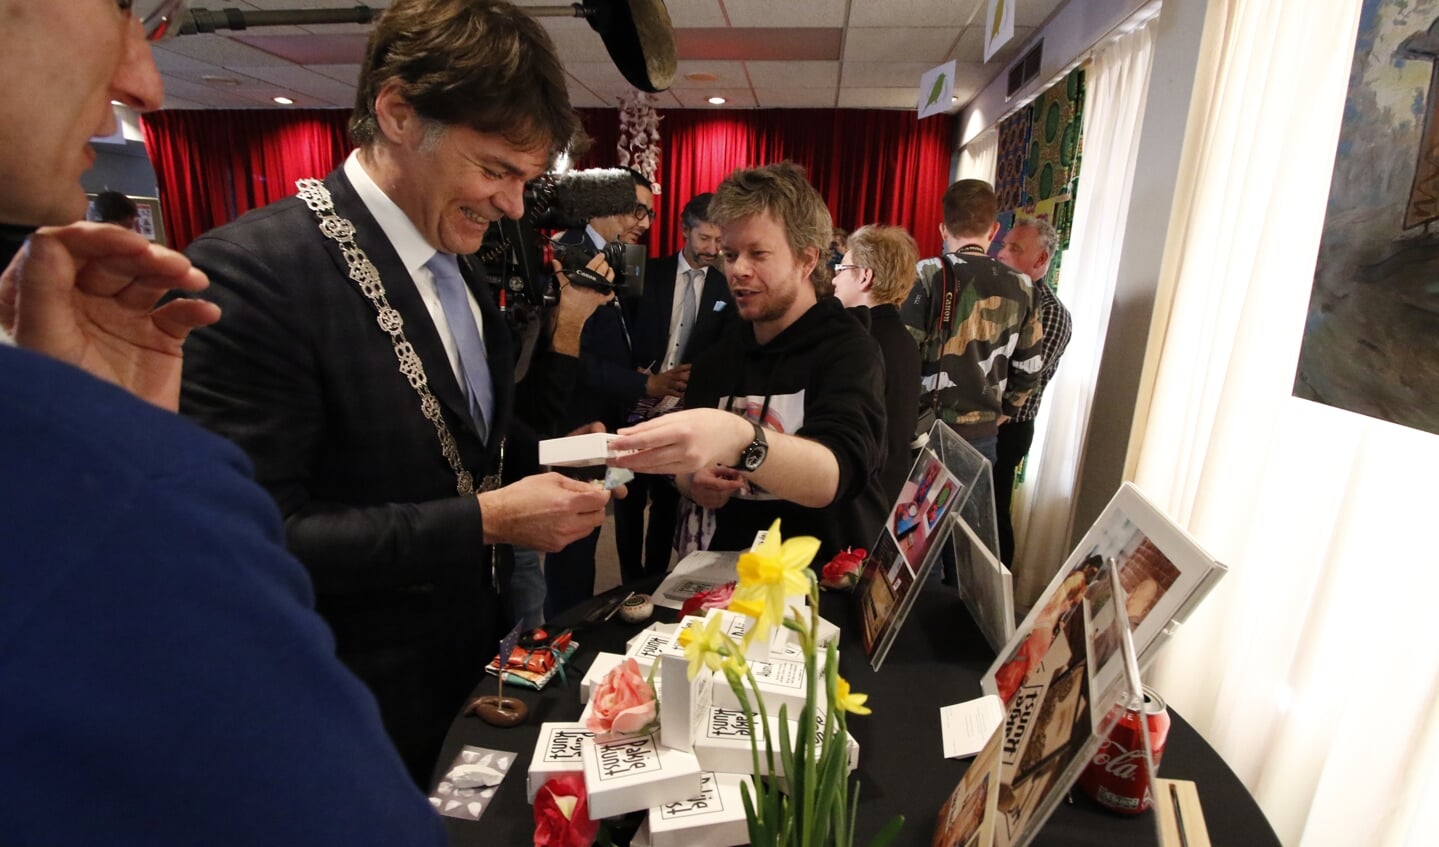 Werkbezoek Koning Willem-Alexander aan coöperatie de Vrije Uitloop in Breda. In het pand van Tientjes spreekt hij scharrelondernemers.